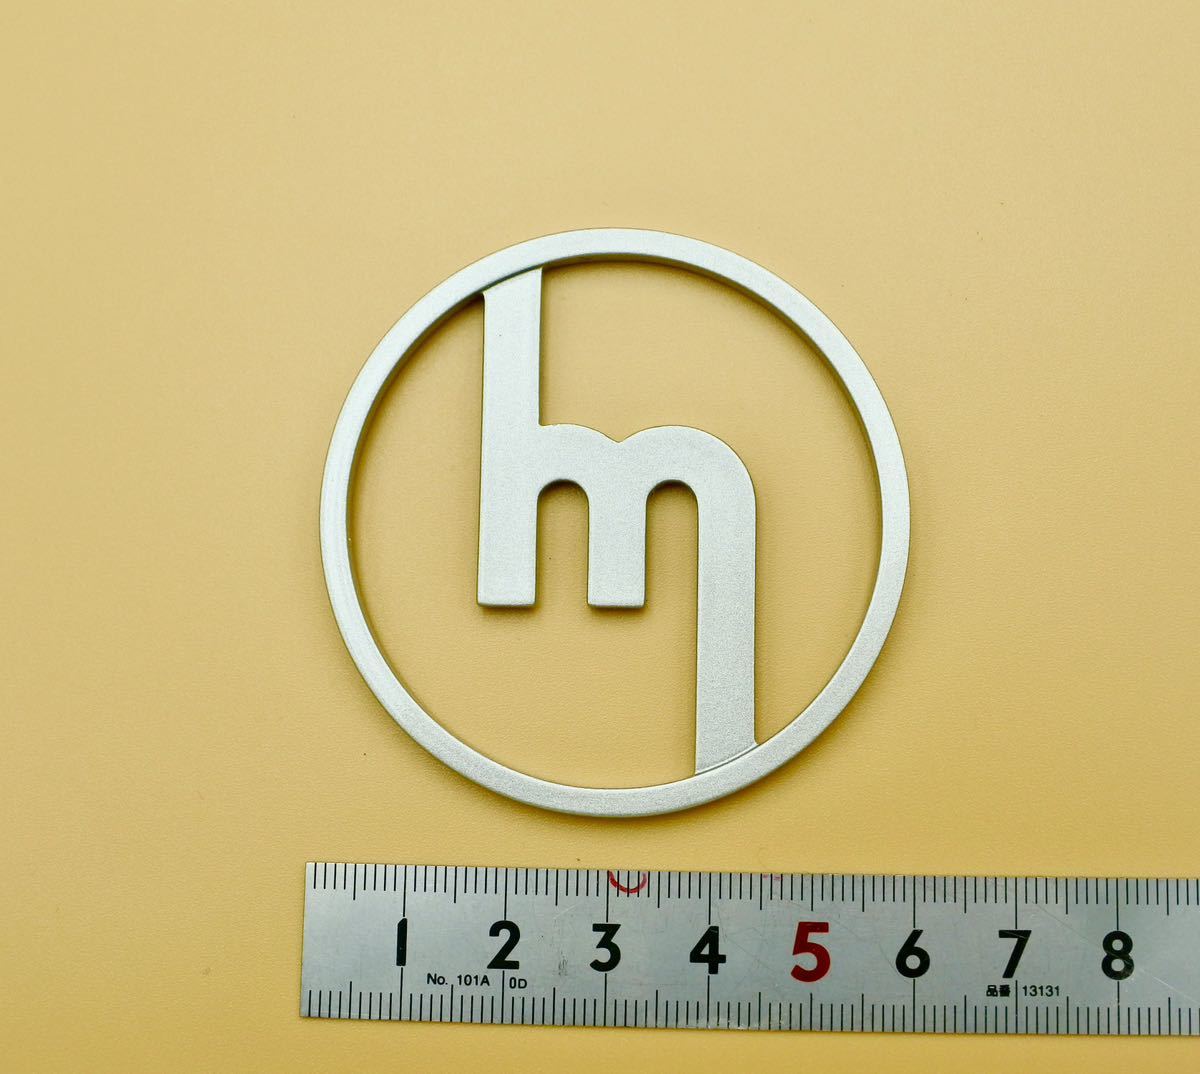  старый Mazda Mazda круг m Mark ( маленький )59φ оригинал ручная работа эмблема старый машина восстановление ( серебряно-металлический )